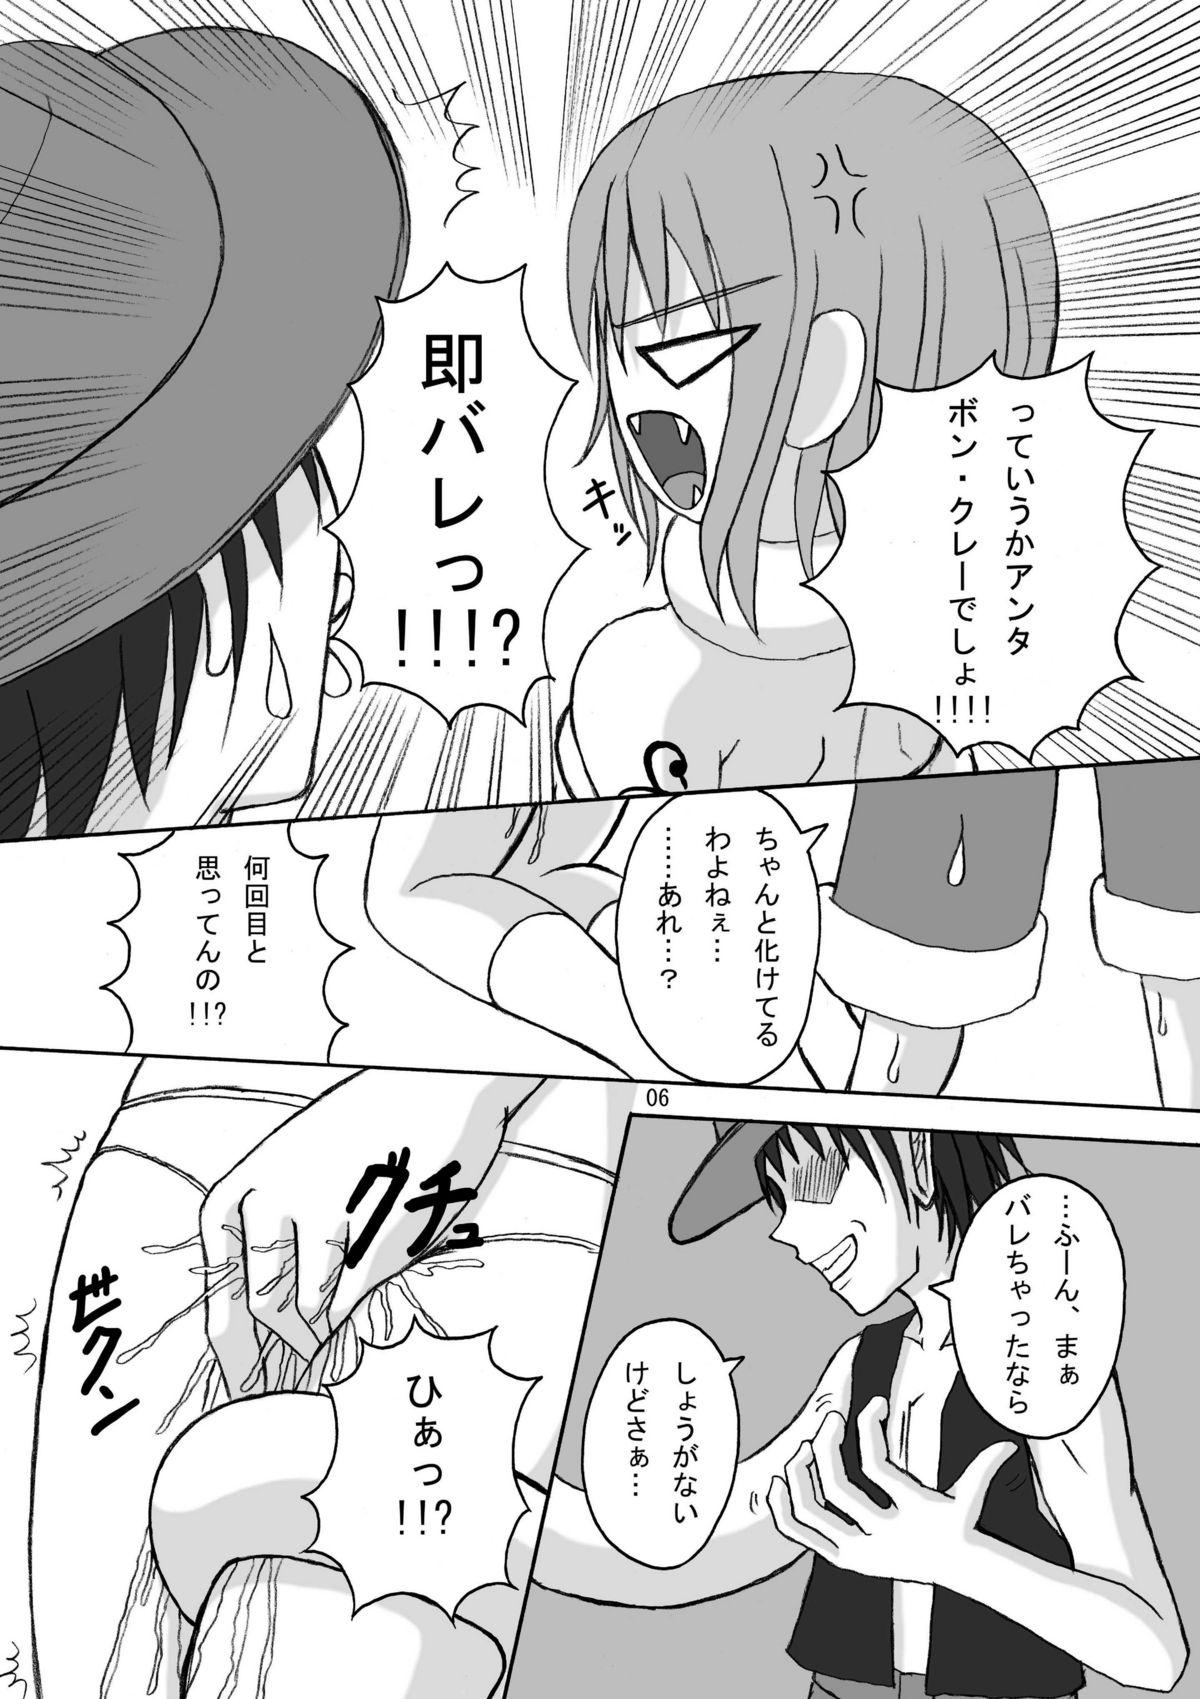 Sextoy Jump Tales 5 San P Nami Baku More Condom Nami vs Gear3 vs Marunomi Hebihime - One piece Bigtits - Page 5